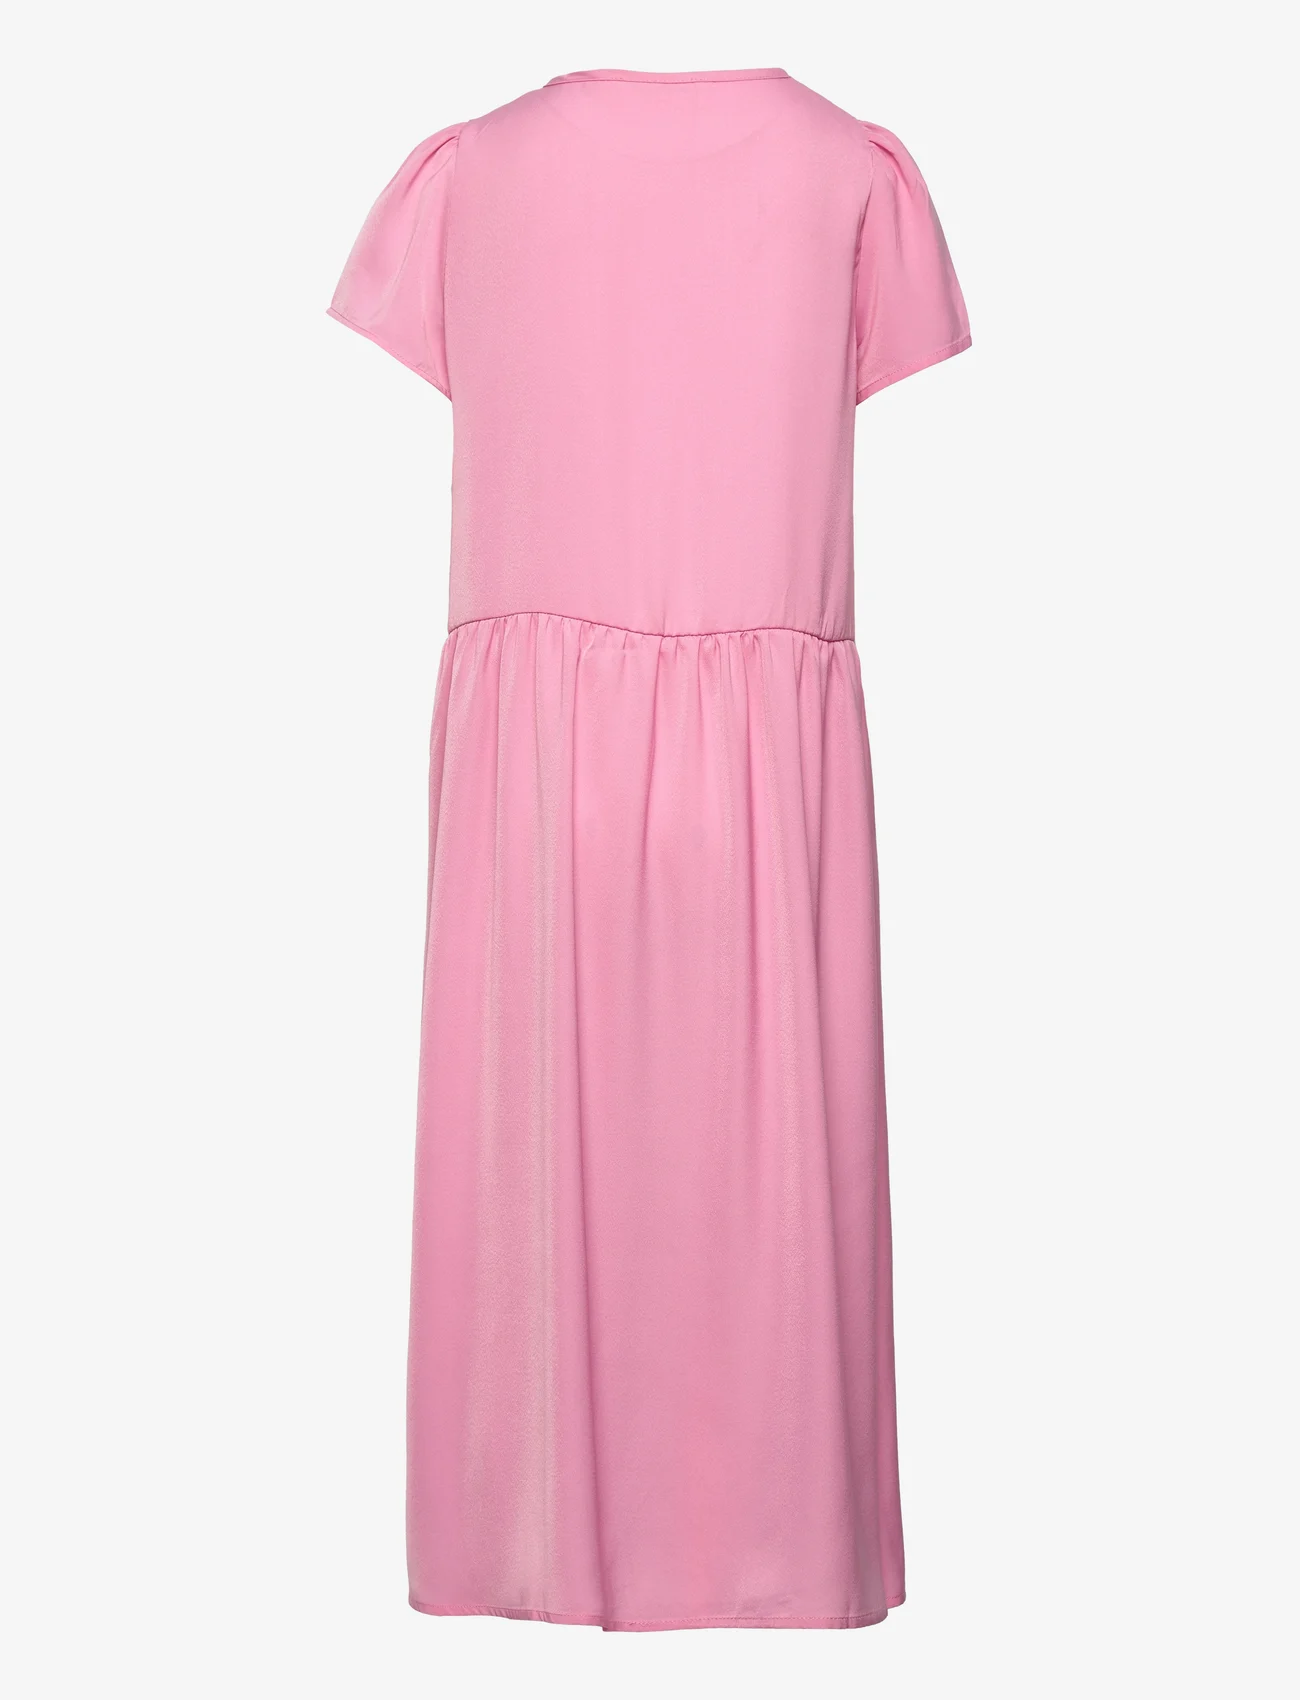 Rosemunde Kids - Dress ss - kurzärmelige freizeitkleider - bubblegum pink - 1